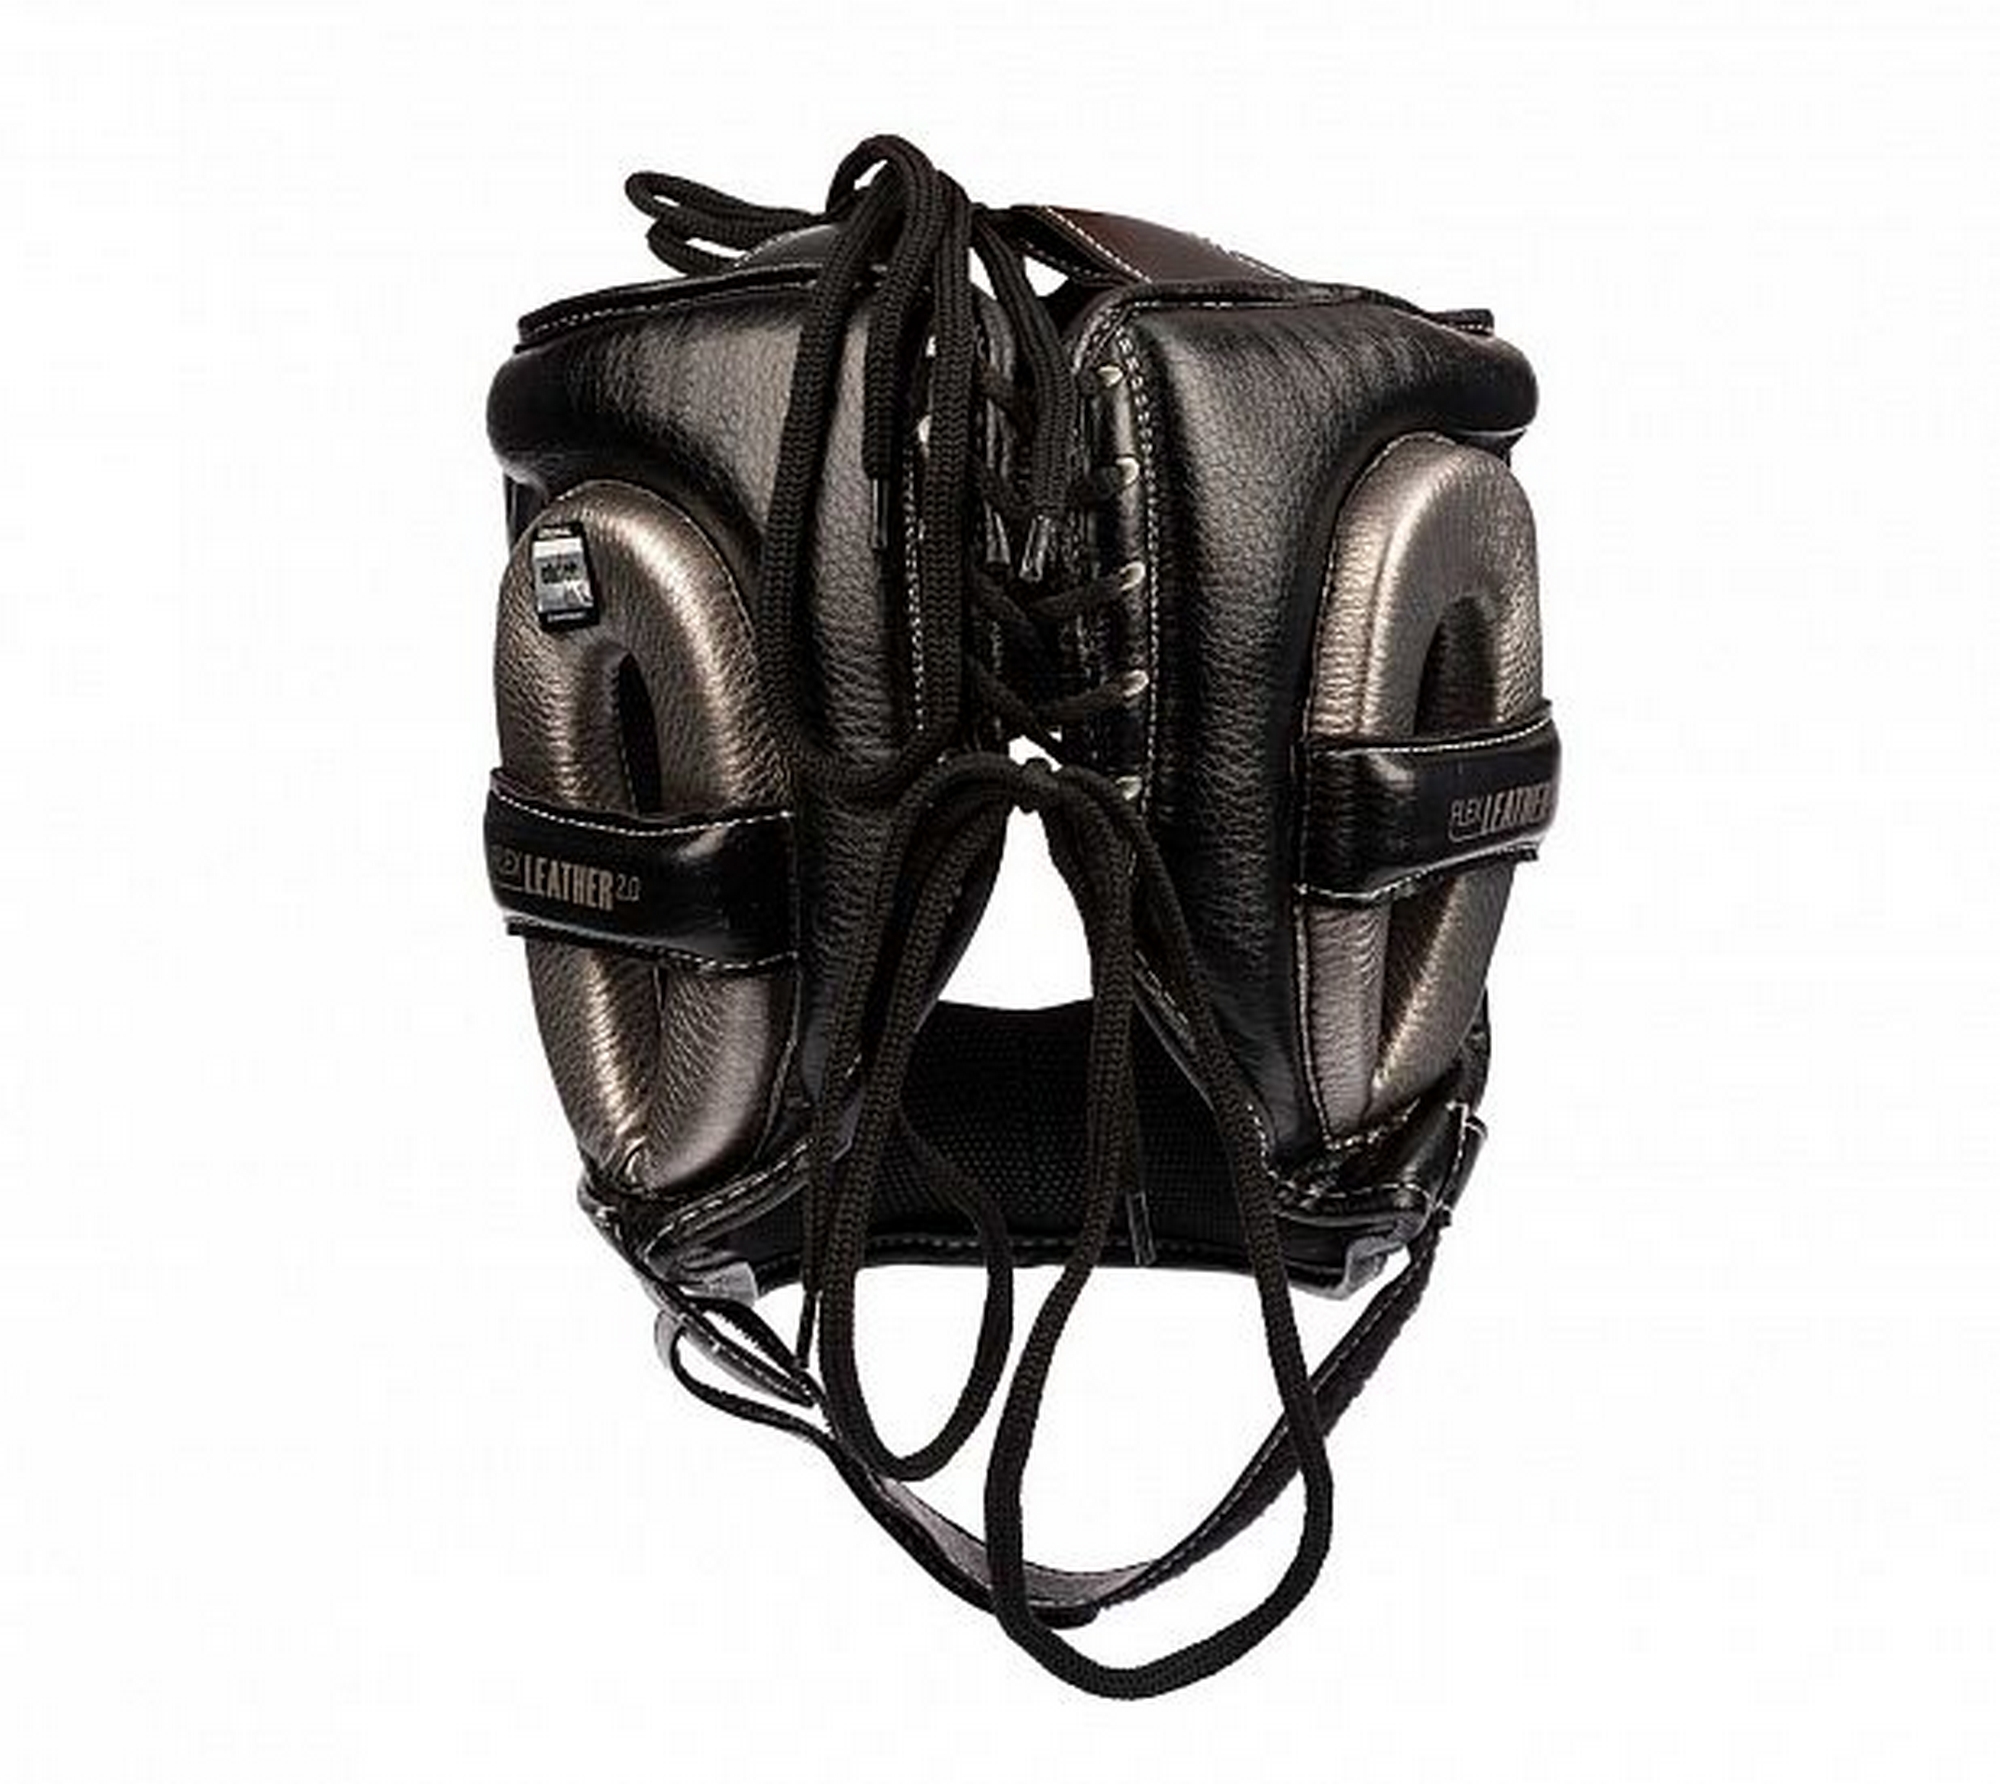 Шлем для единоборств с бампером Clinch Face Guard C149 черно-бронзовый 2000_1784